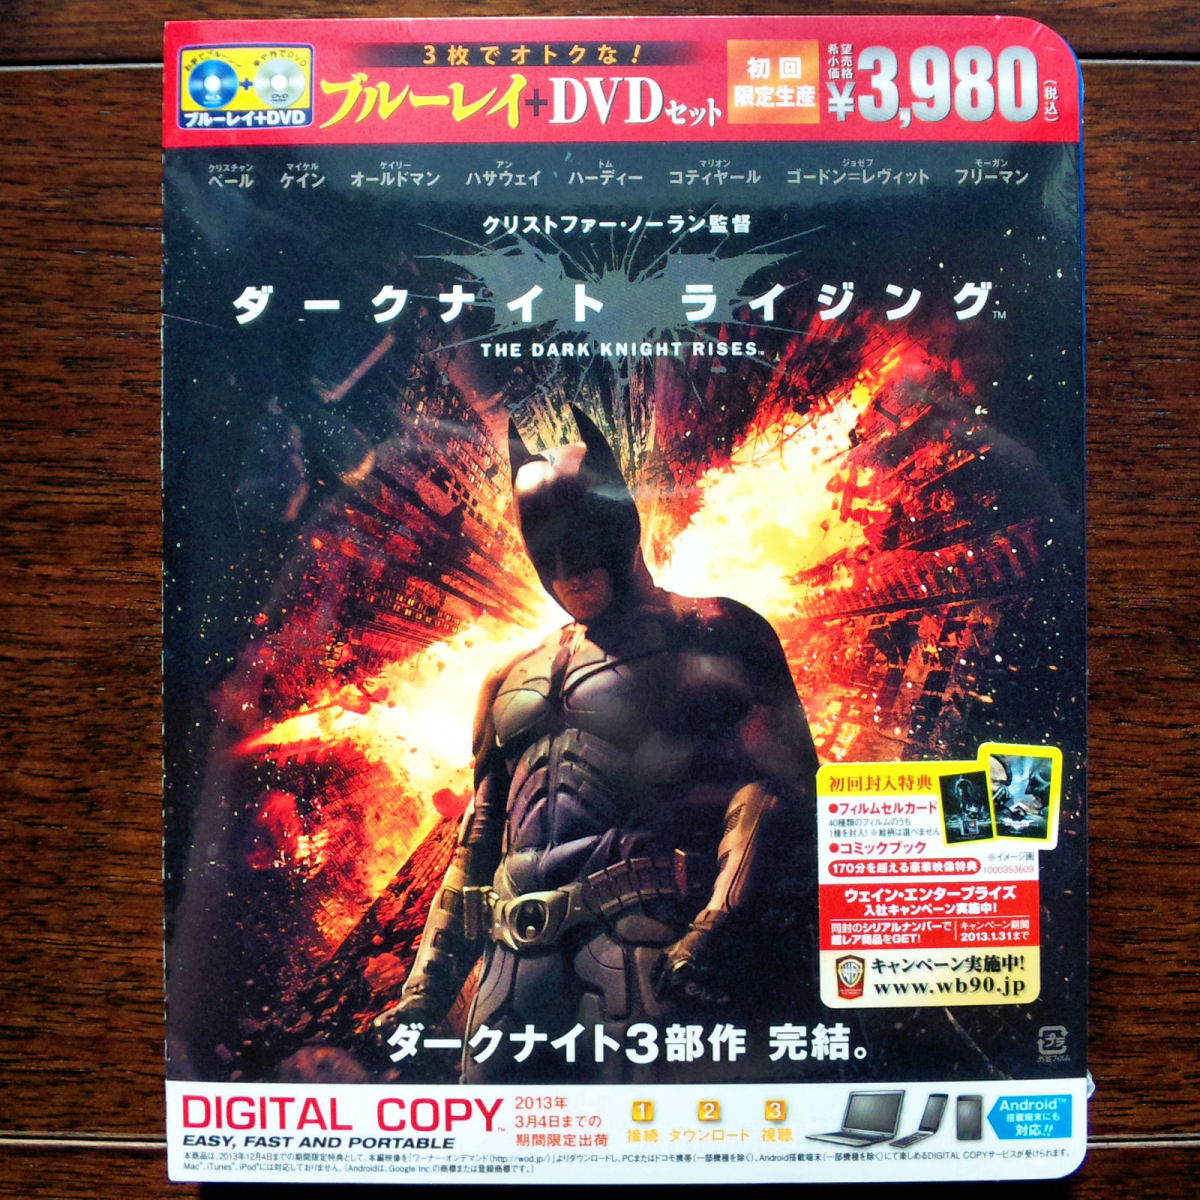 ダークナイト ライジング Blu-ray  DVDセット(初回限定生産)